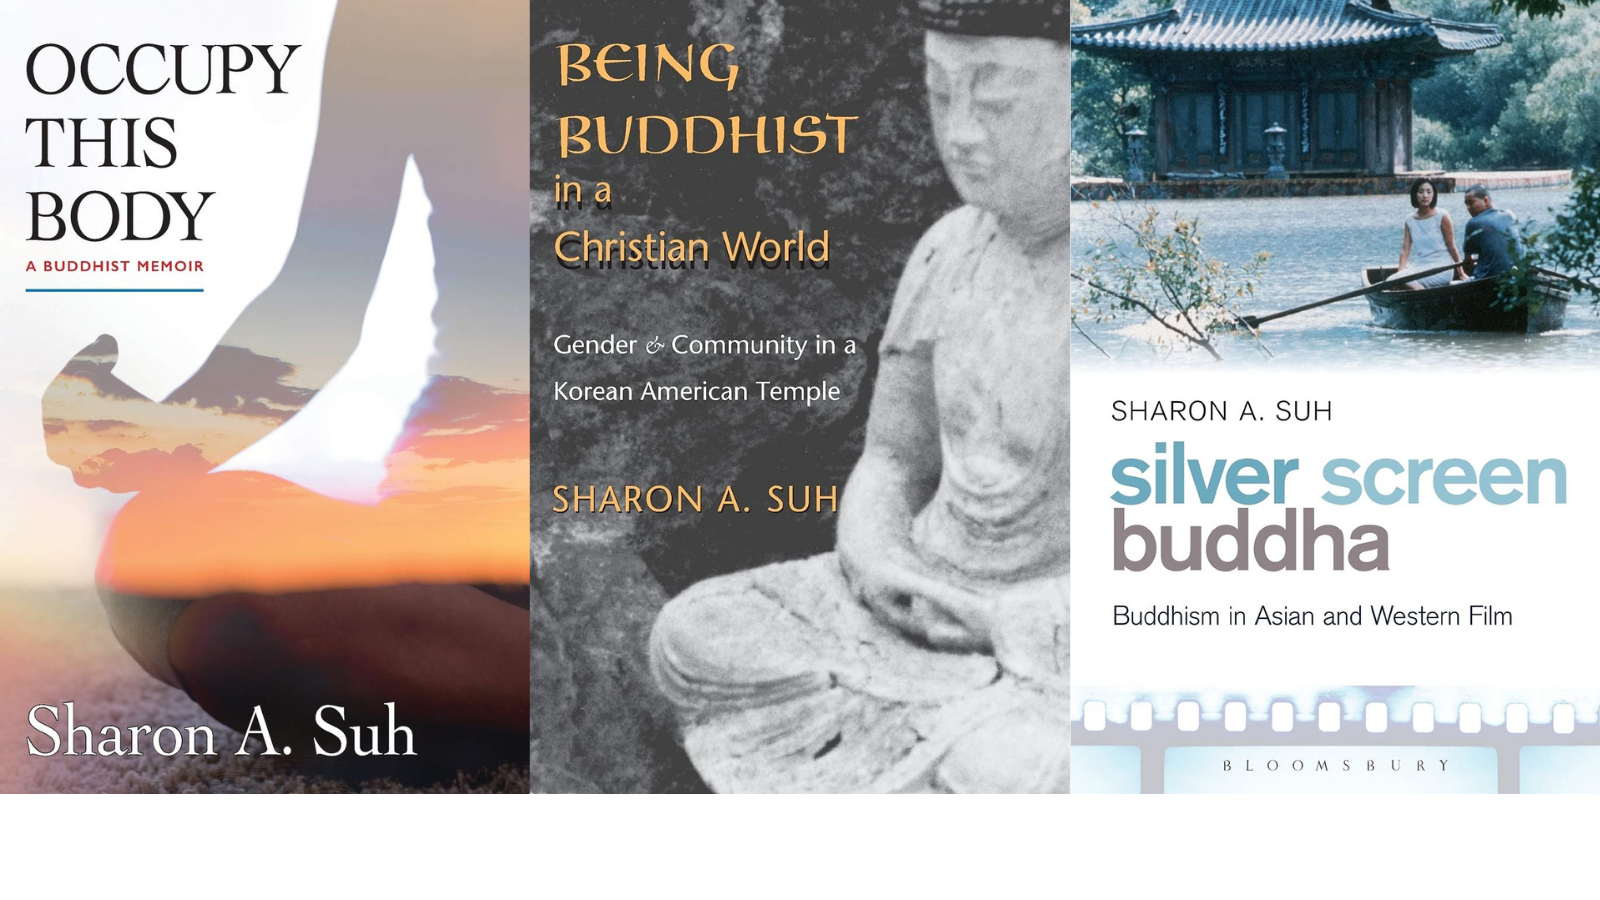 “食べる瞑想” 仏教学者シャロン・スーが考える食習慣と生き方の関係性